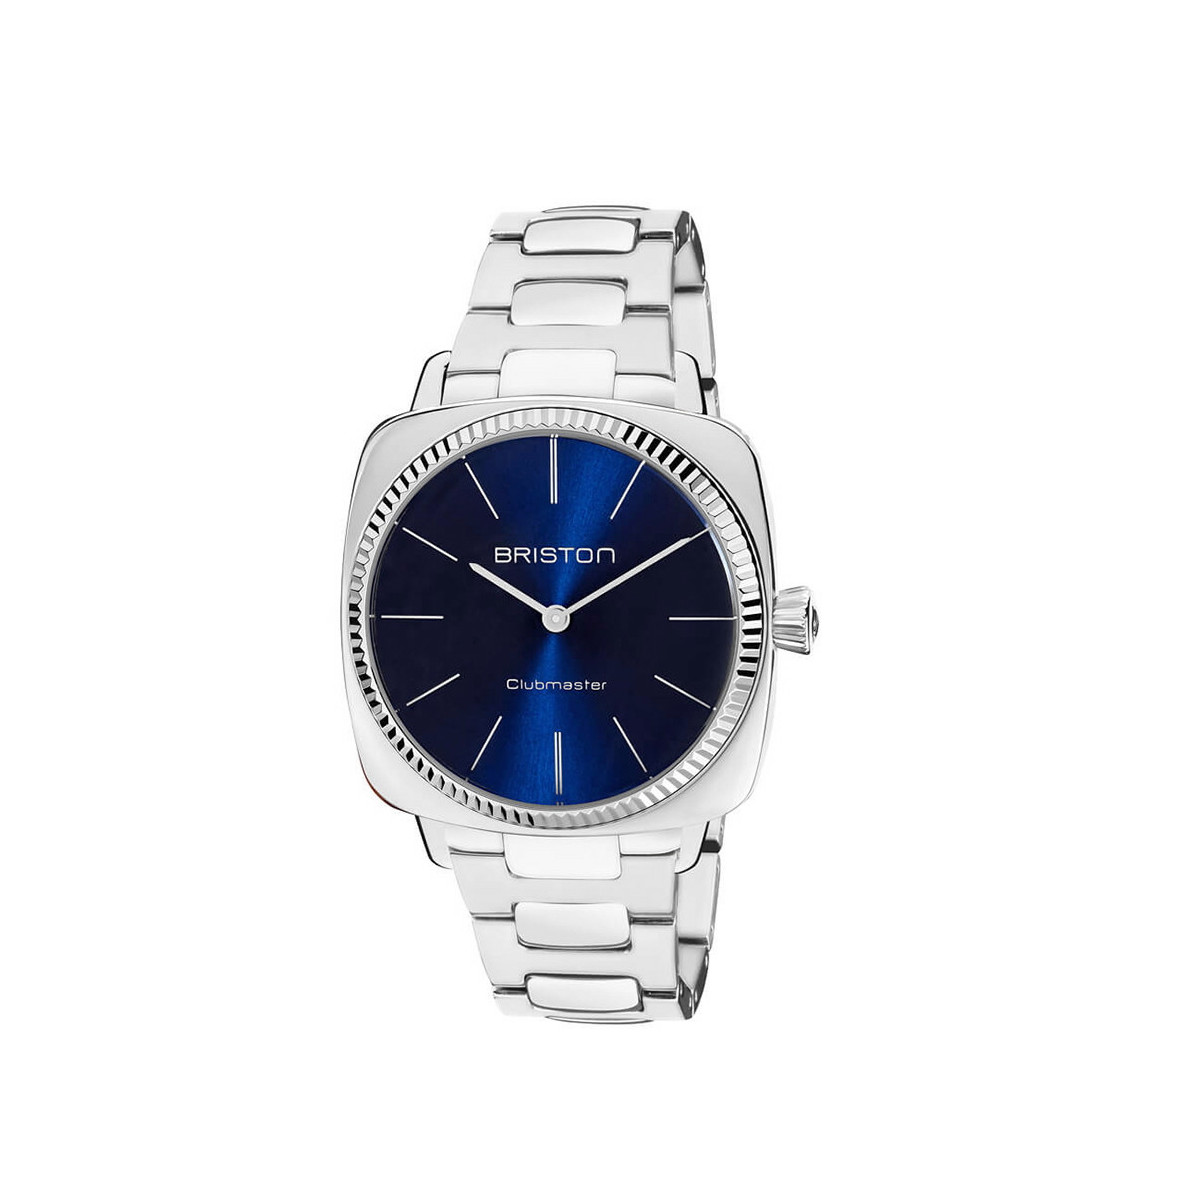 Reloj Coronel Tapiocca Azul Acero Classic, Joyería ARESSO